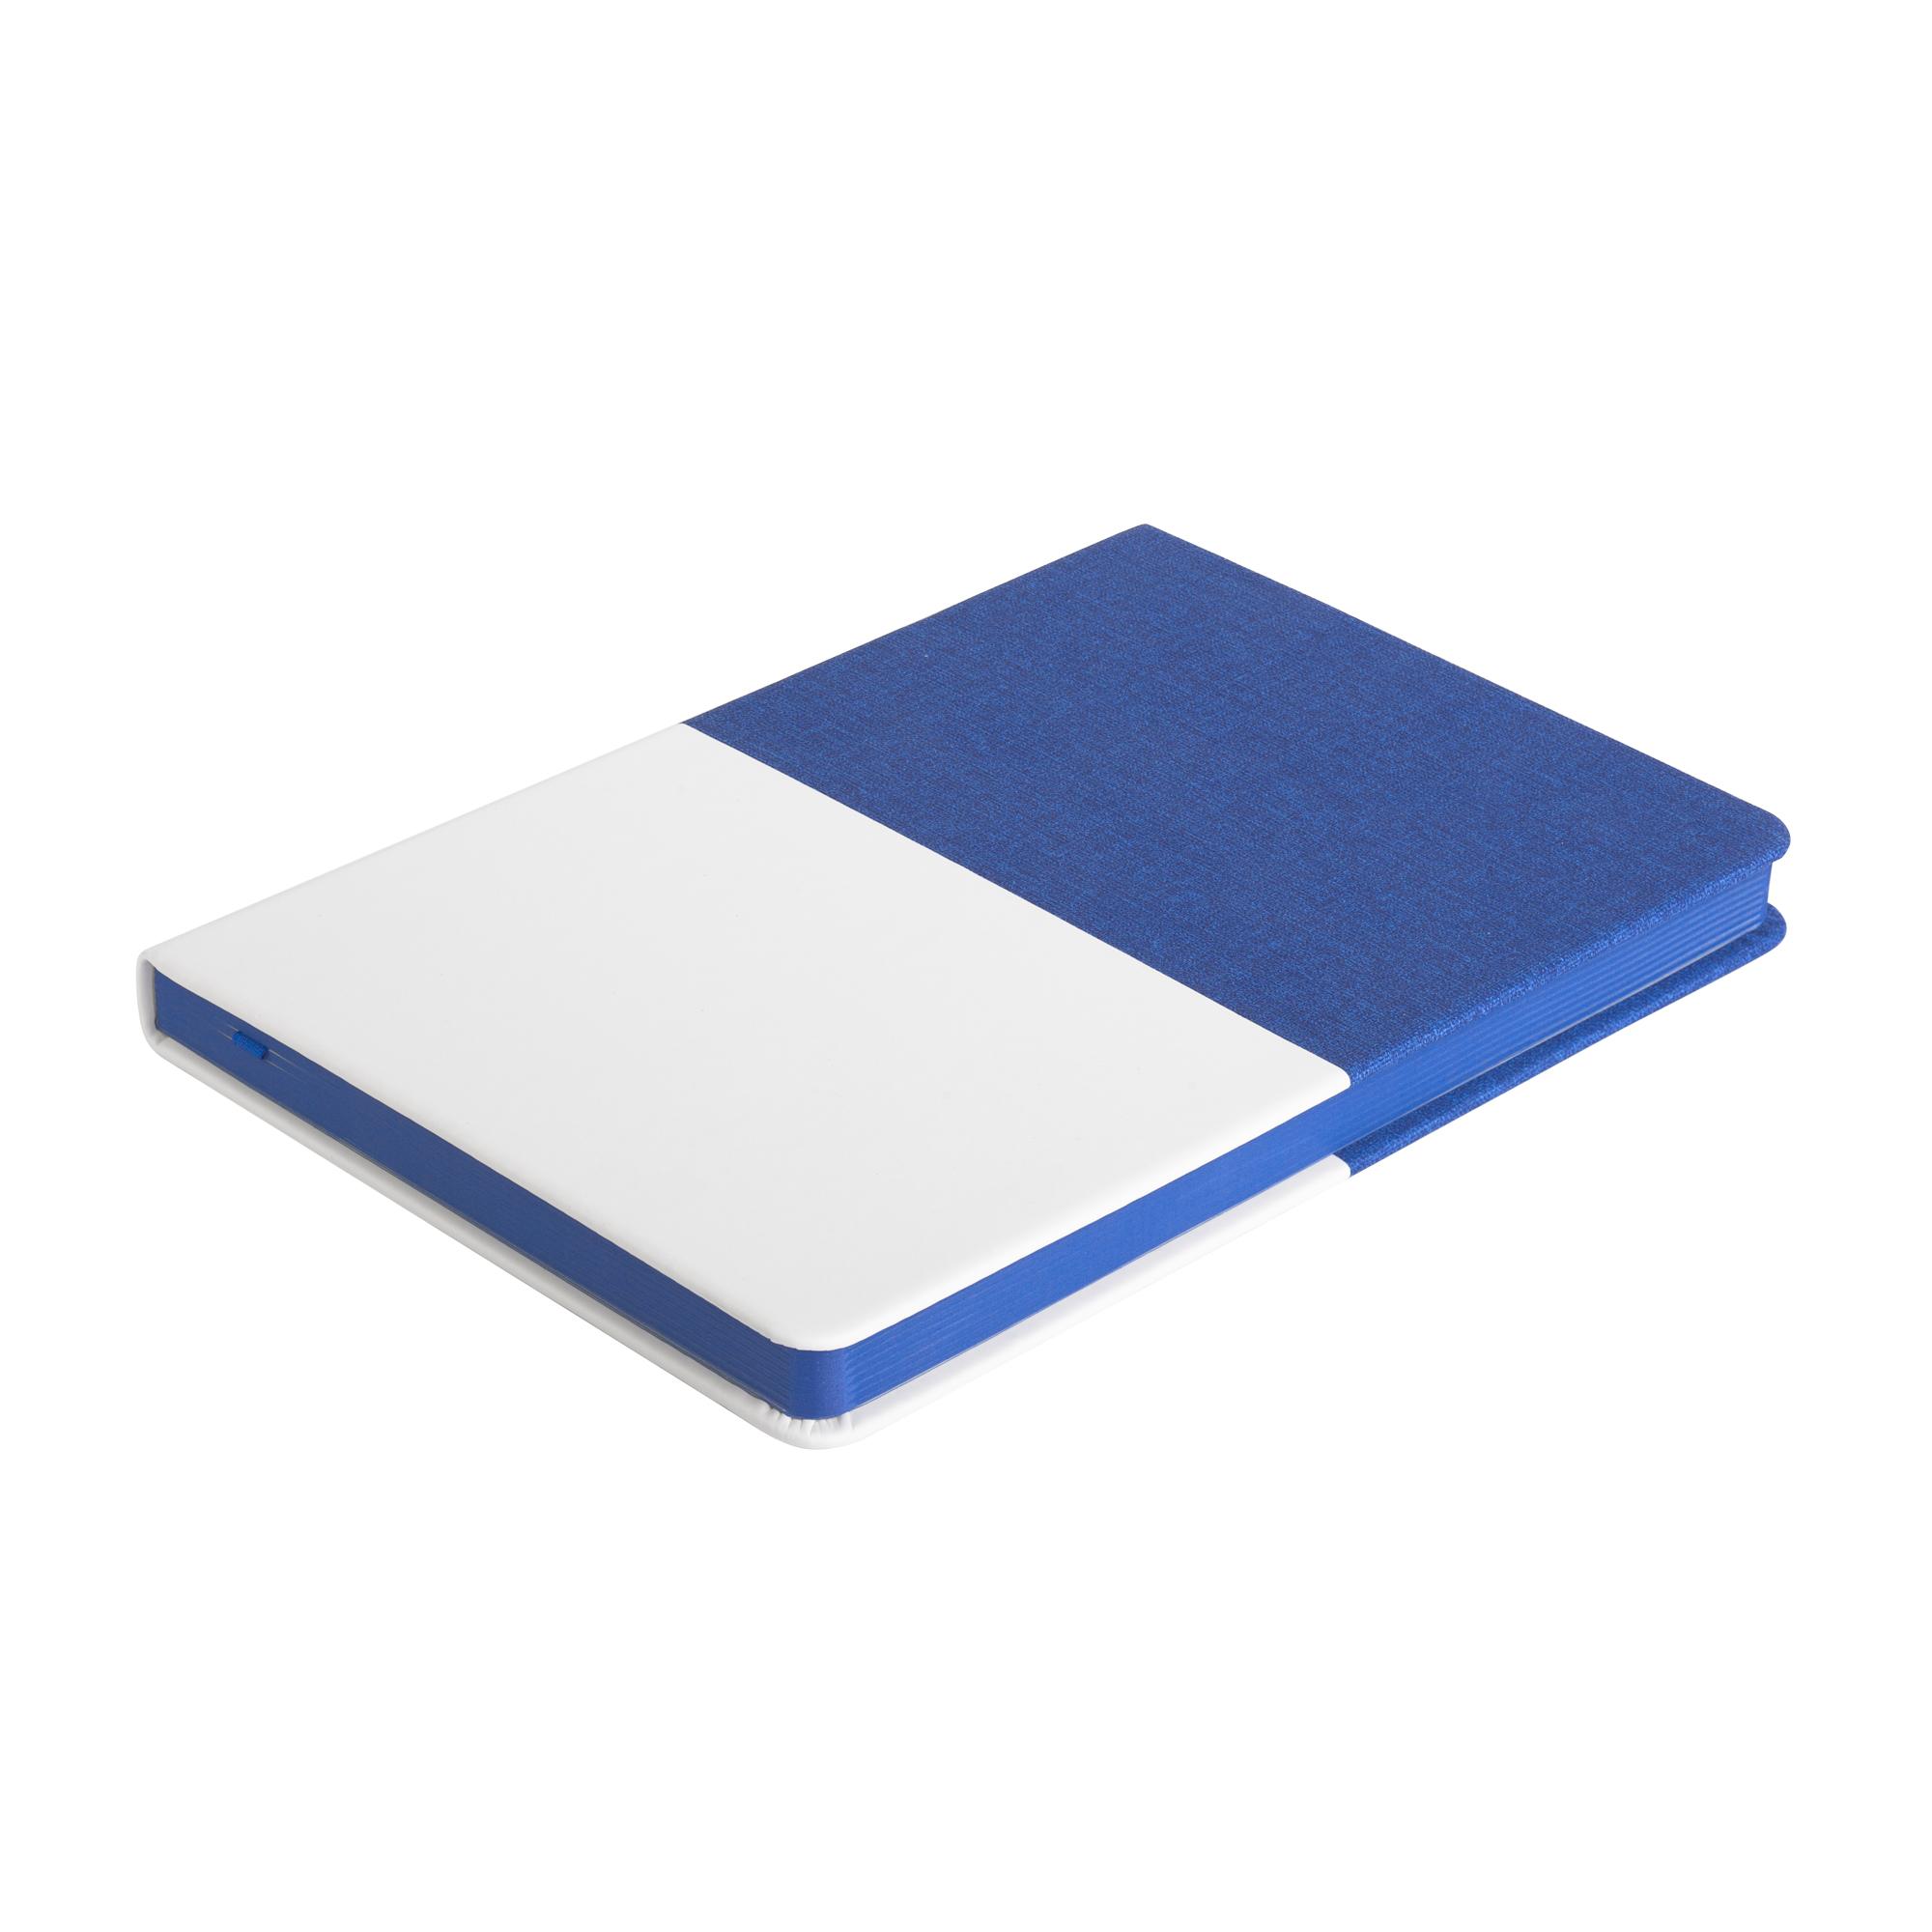 Ежедневник недатированный "Палермо", А5, цвет синий с белым, фото 2